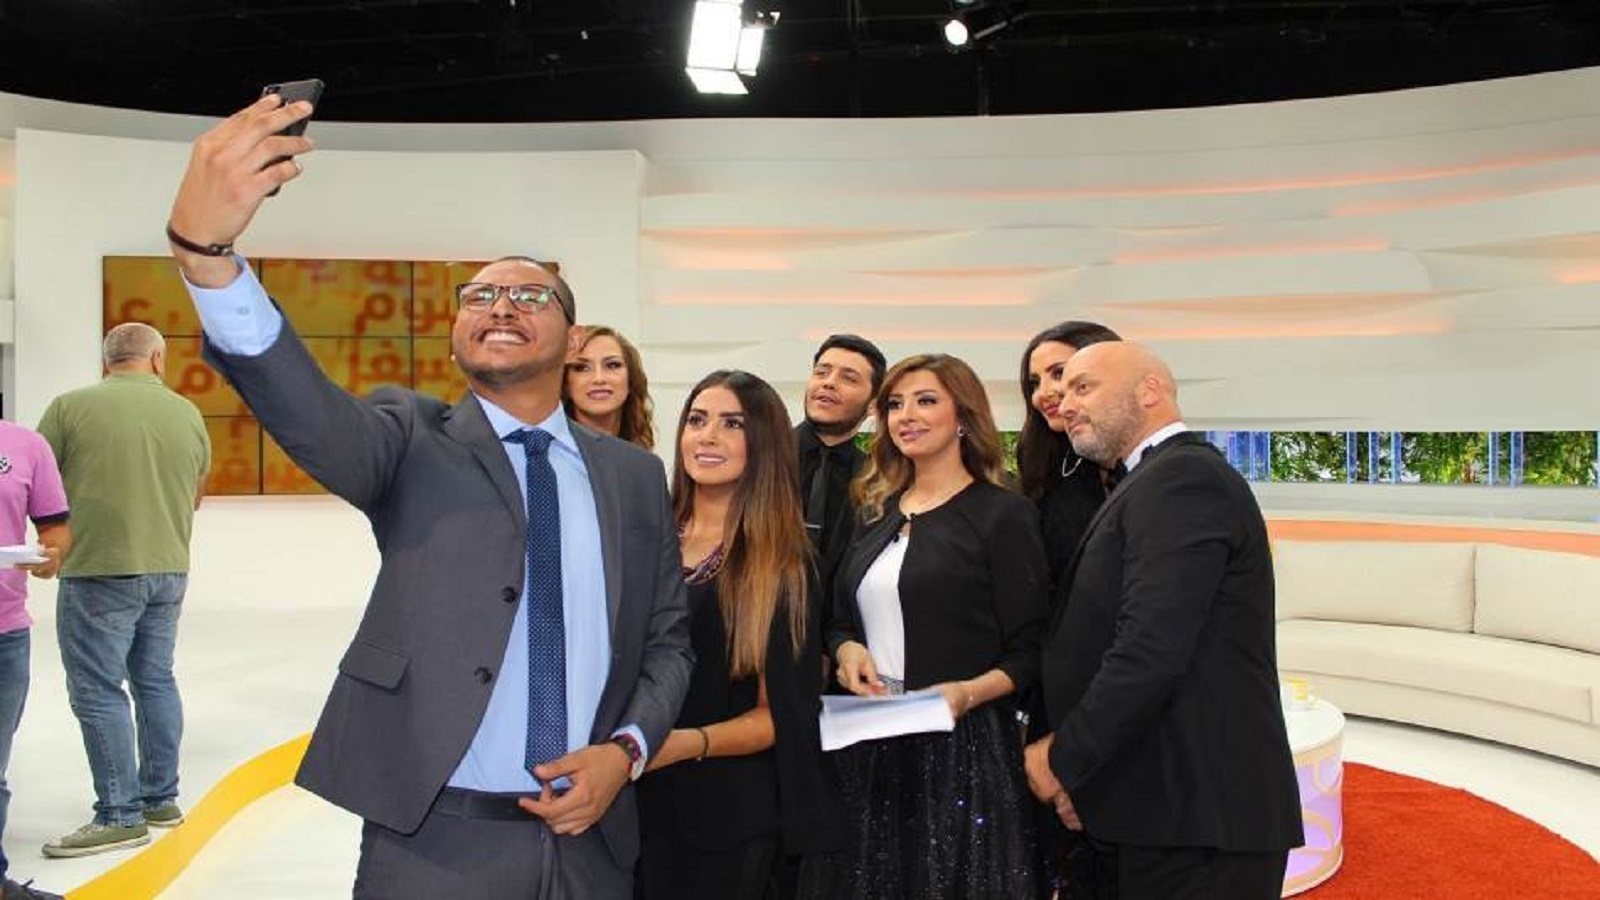 ثمانية أعوام على انطلاق "التلفزيون العربي": وثائقيات وتحقيقات جديدة